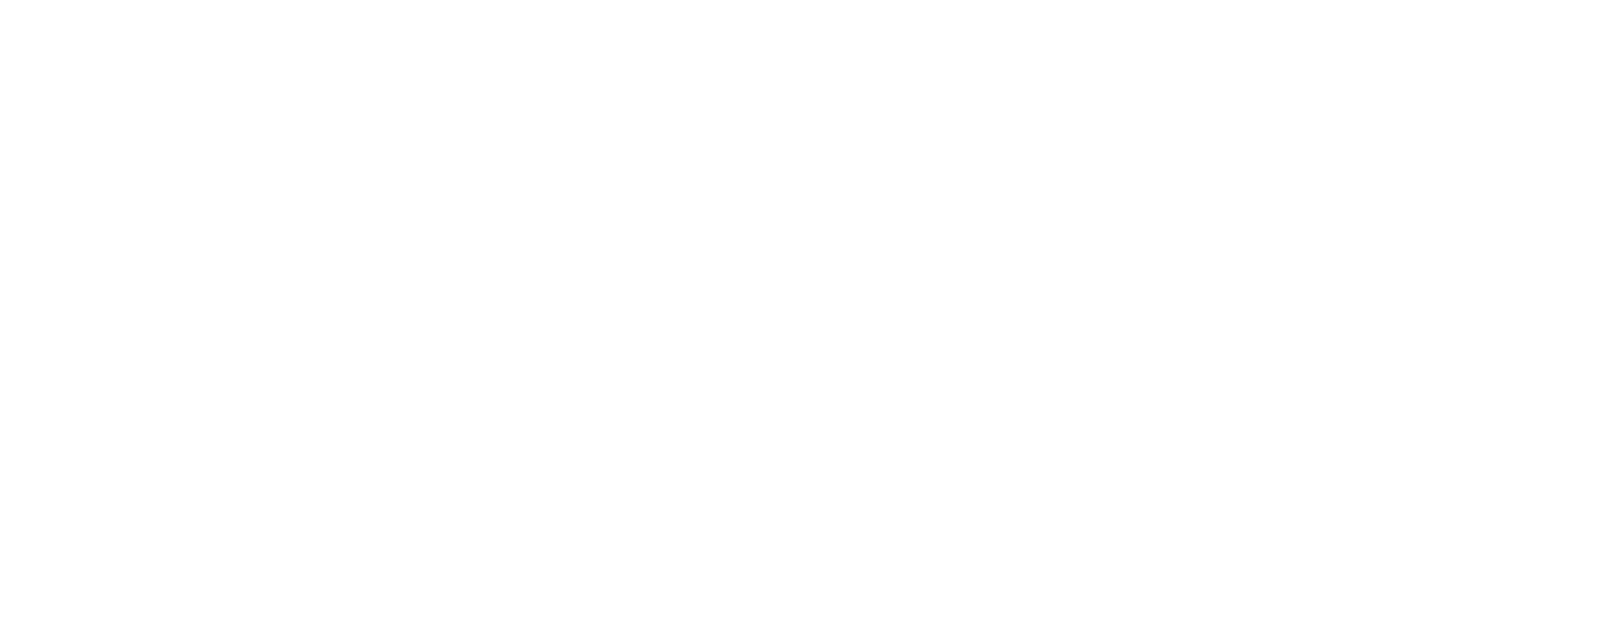 Sallie Mae logo large for dark backgrounds (transparent PNG)